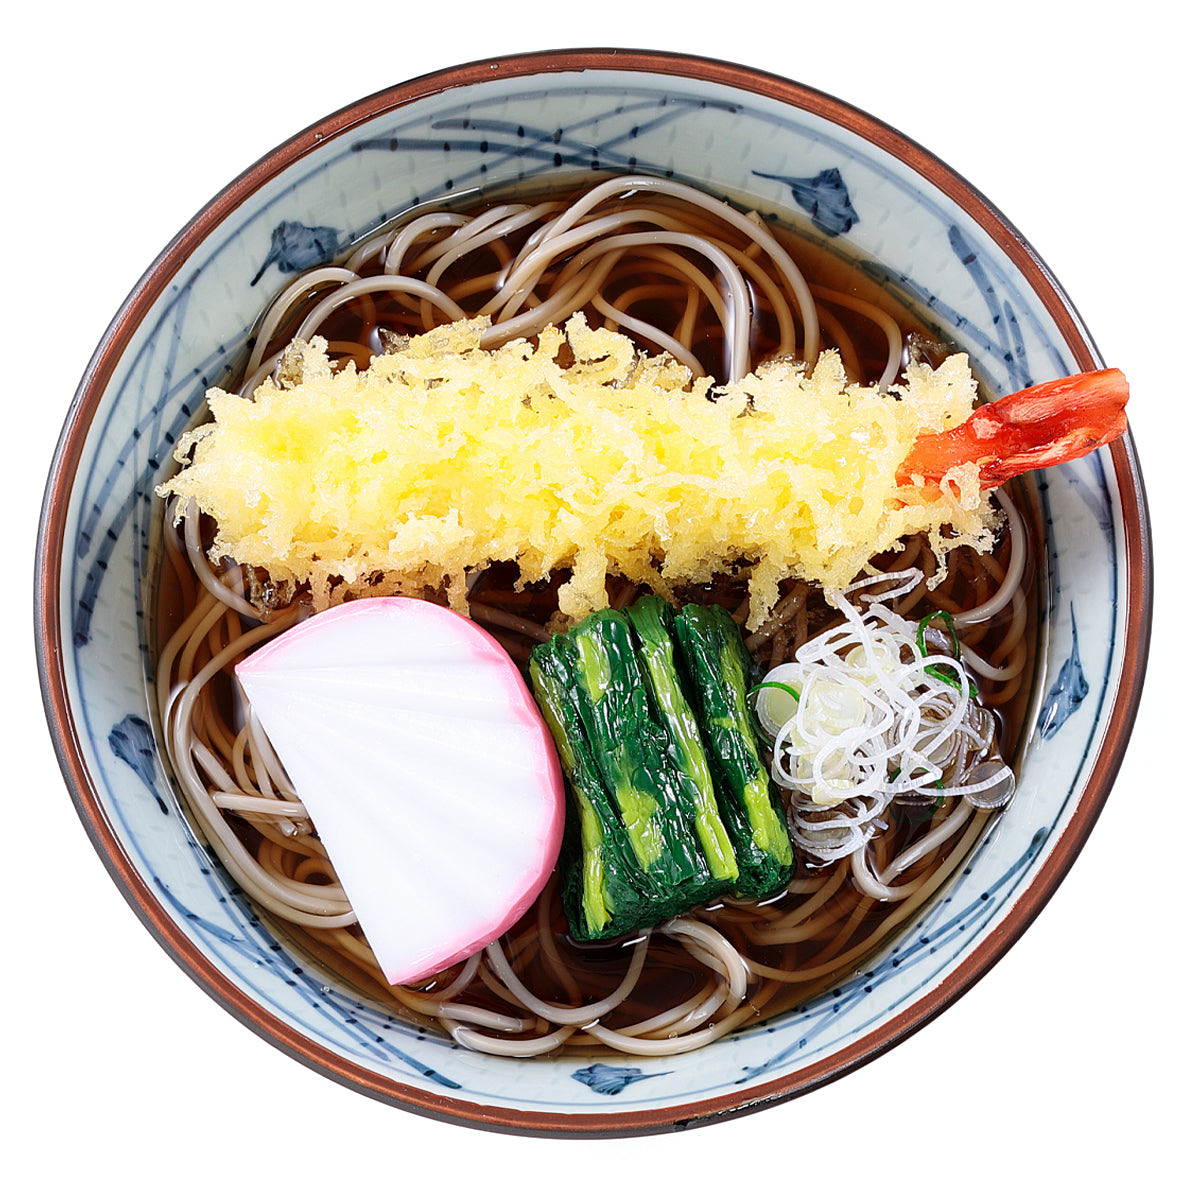 オリジナル食品サンプル「天ぷらそば」の商品画像です。海老天、蒲鉾、ほうれん草、ネギがのっています。